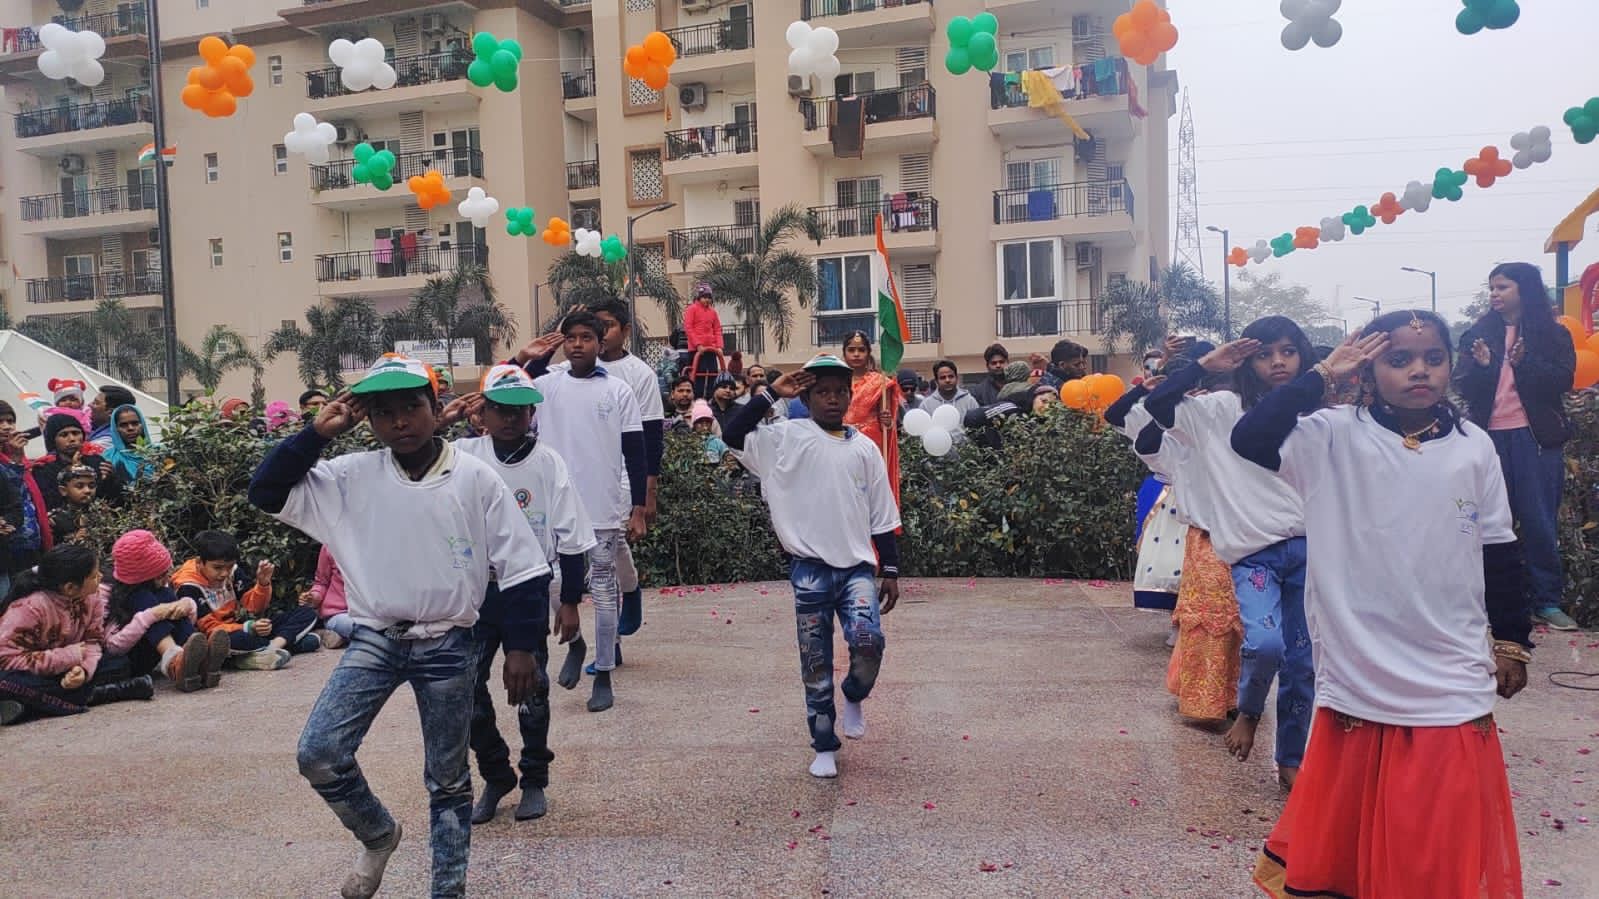 ईएमसीटी की ज्ञानशाला के बच्चो ने गणतंत्र दिवस के अवसर पर ग्रीनआर्च सोसाइटी में अपने नृत्य और कला के माध्यम से शिक्षा पर सभी का अधिकार का दिया संदेश।